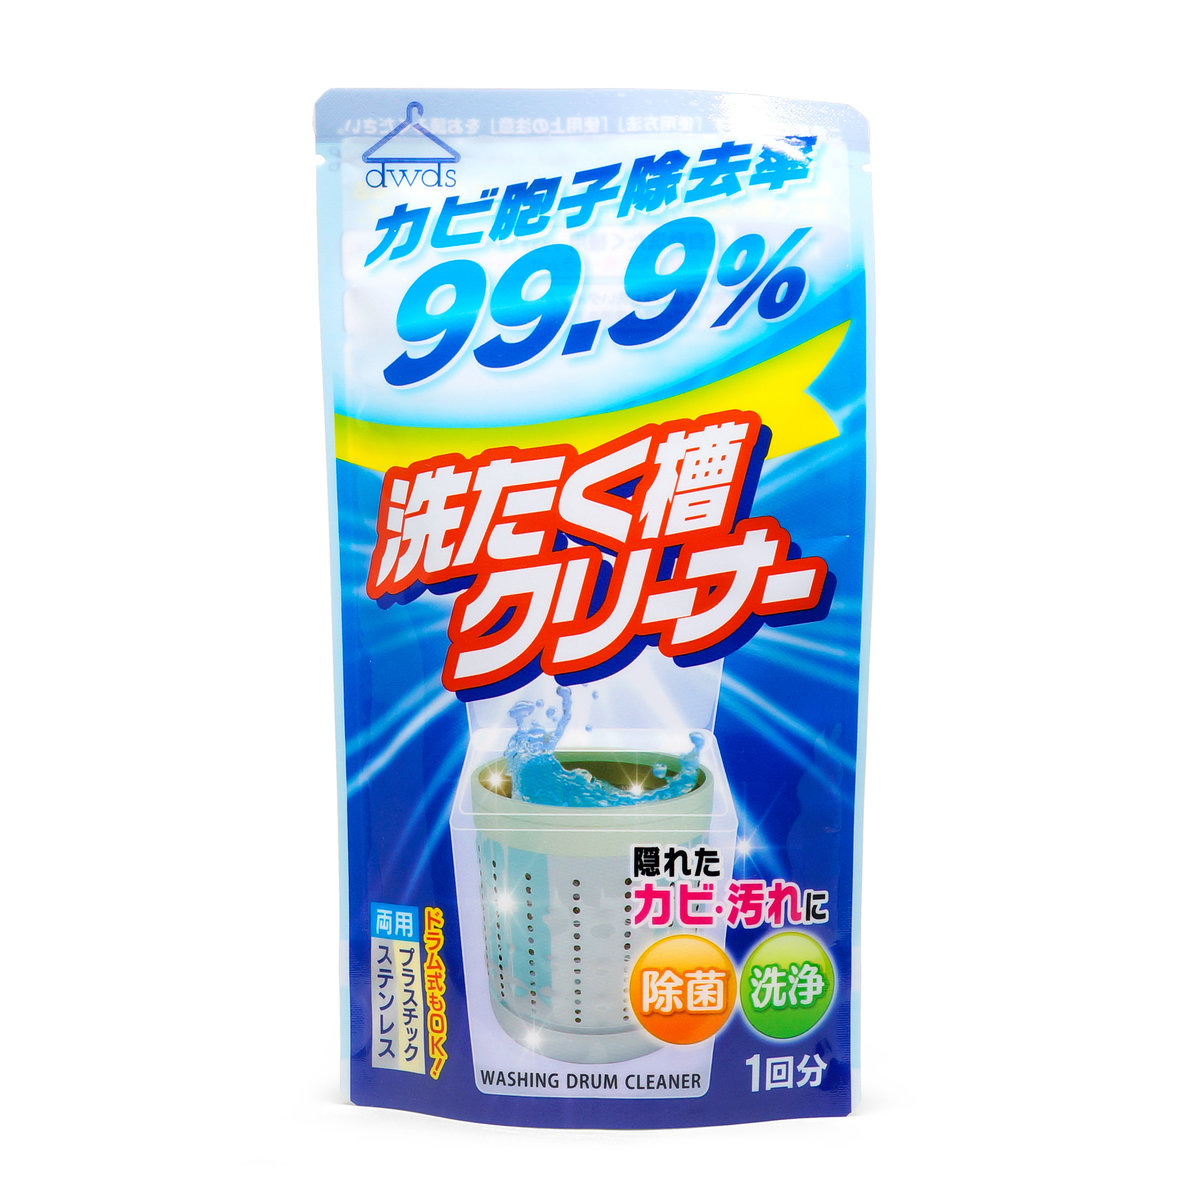 日本Rocket | 洗衣机 槽 | 99.99% 杀菌清洁剂 | 120g | Washing machine tank | cleaner